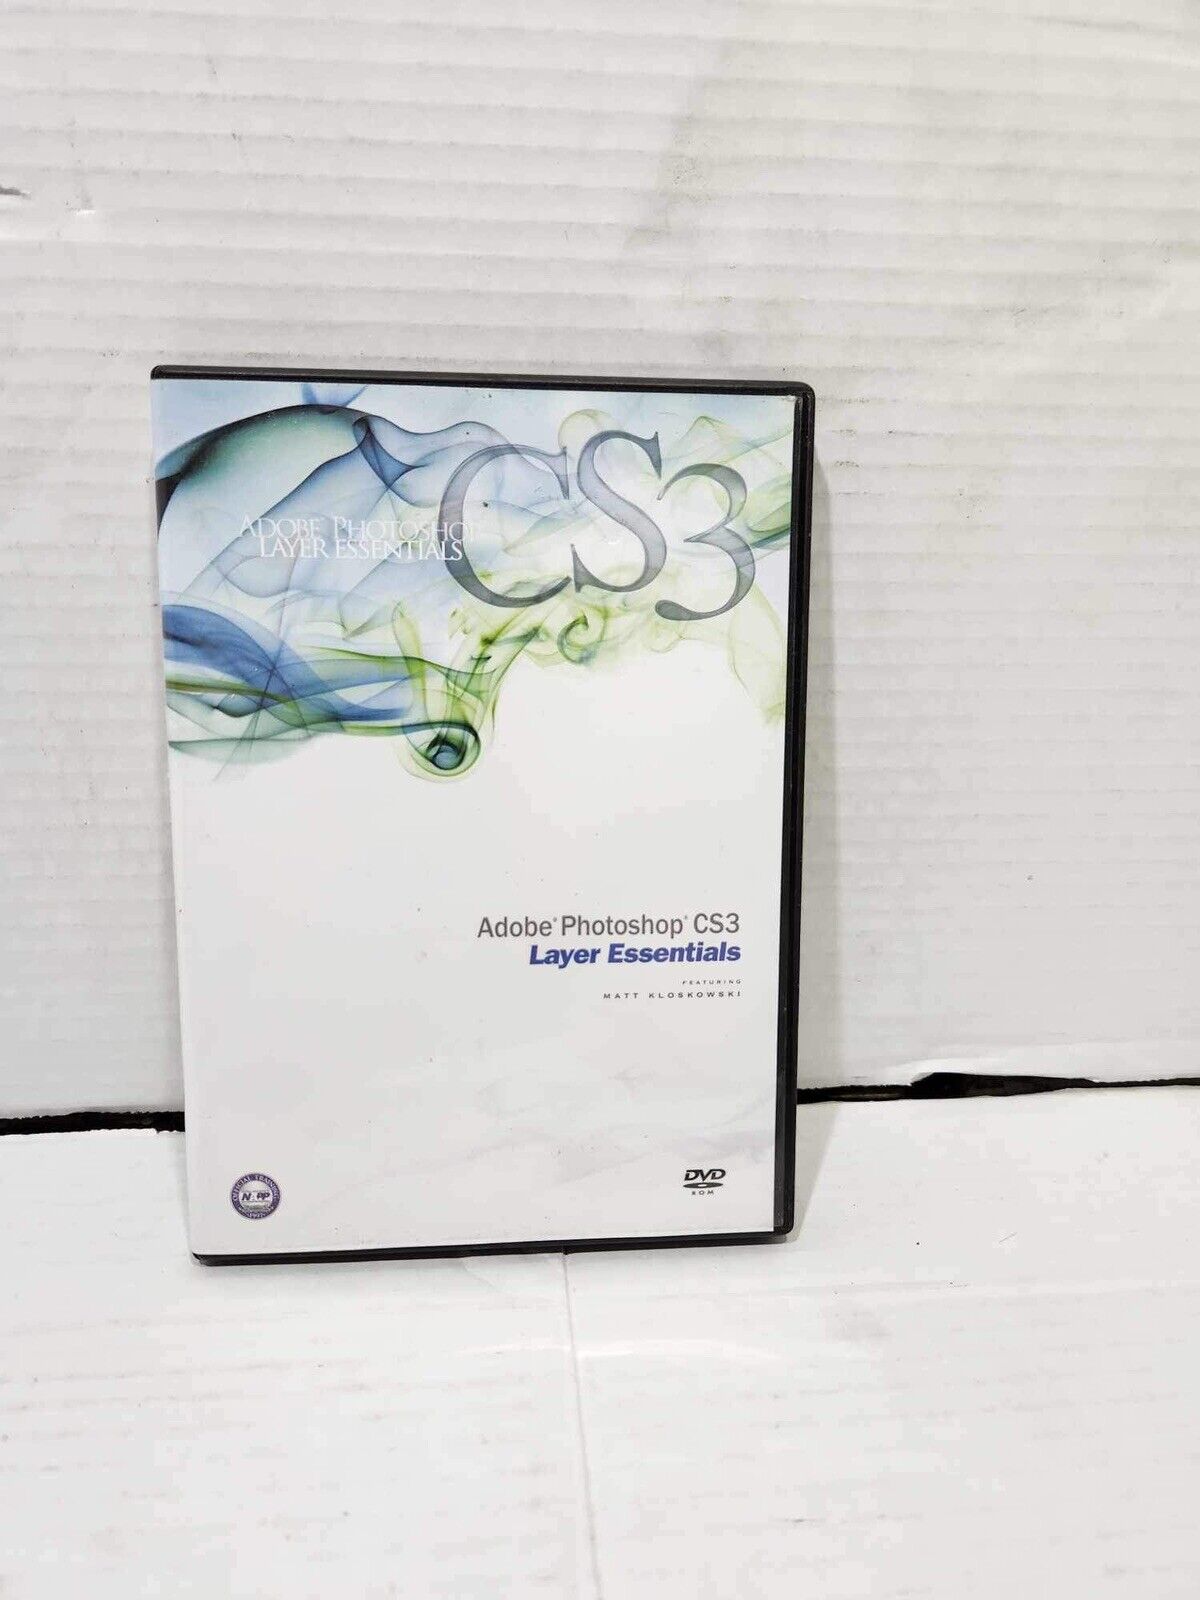 Adobe Photoshop CS3 Layer Essentials Dvd